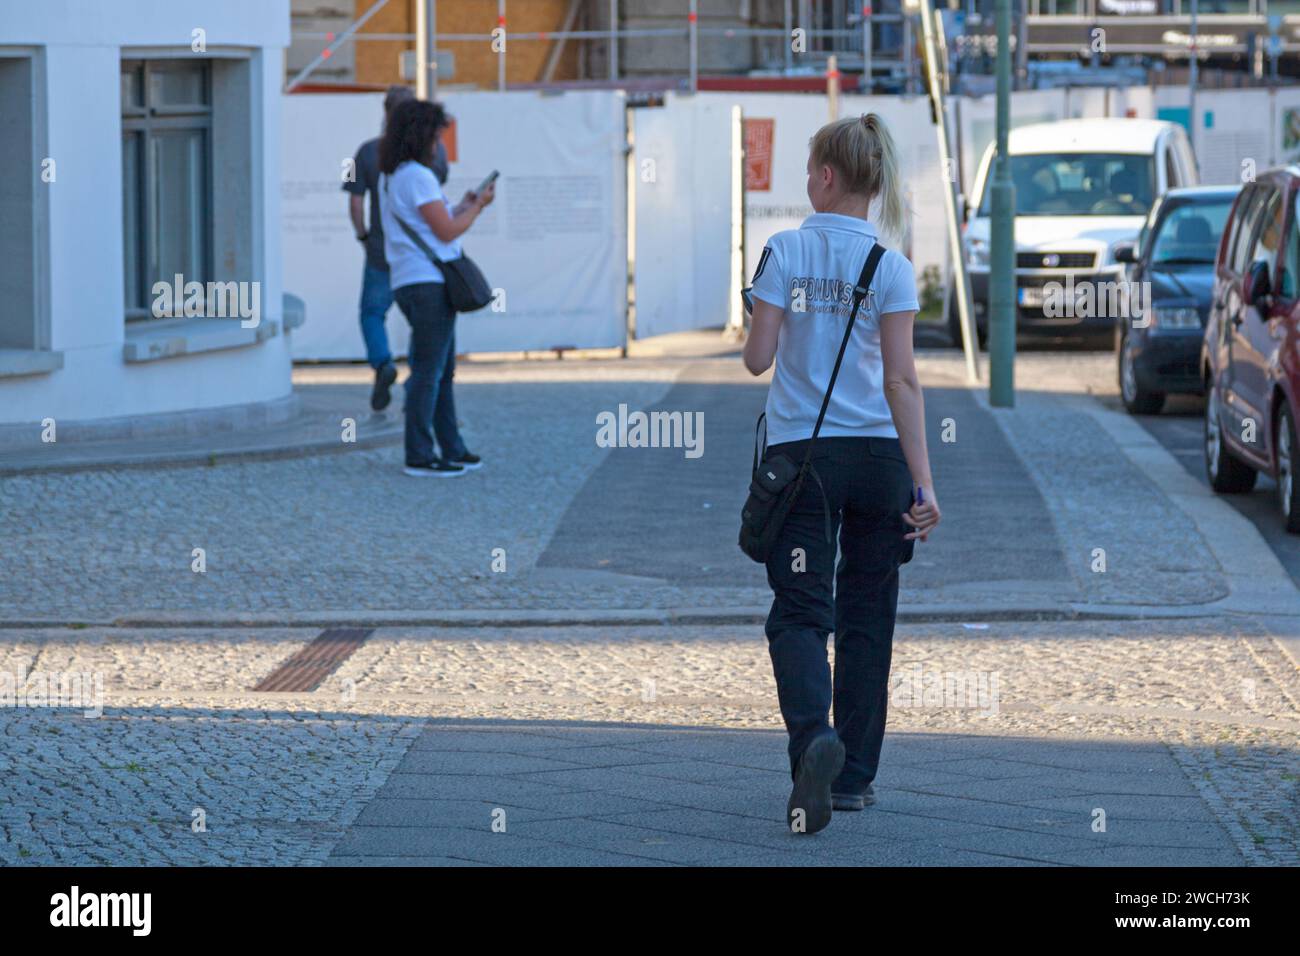 Berlino, Germania - 02 giugno 2019: Ufficiale dell'Ordnungsamt (Ufficio delle forze dell'ordine) che vagava per strada alla ricerca di un'auto da verbalizzare. Foto Stock